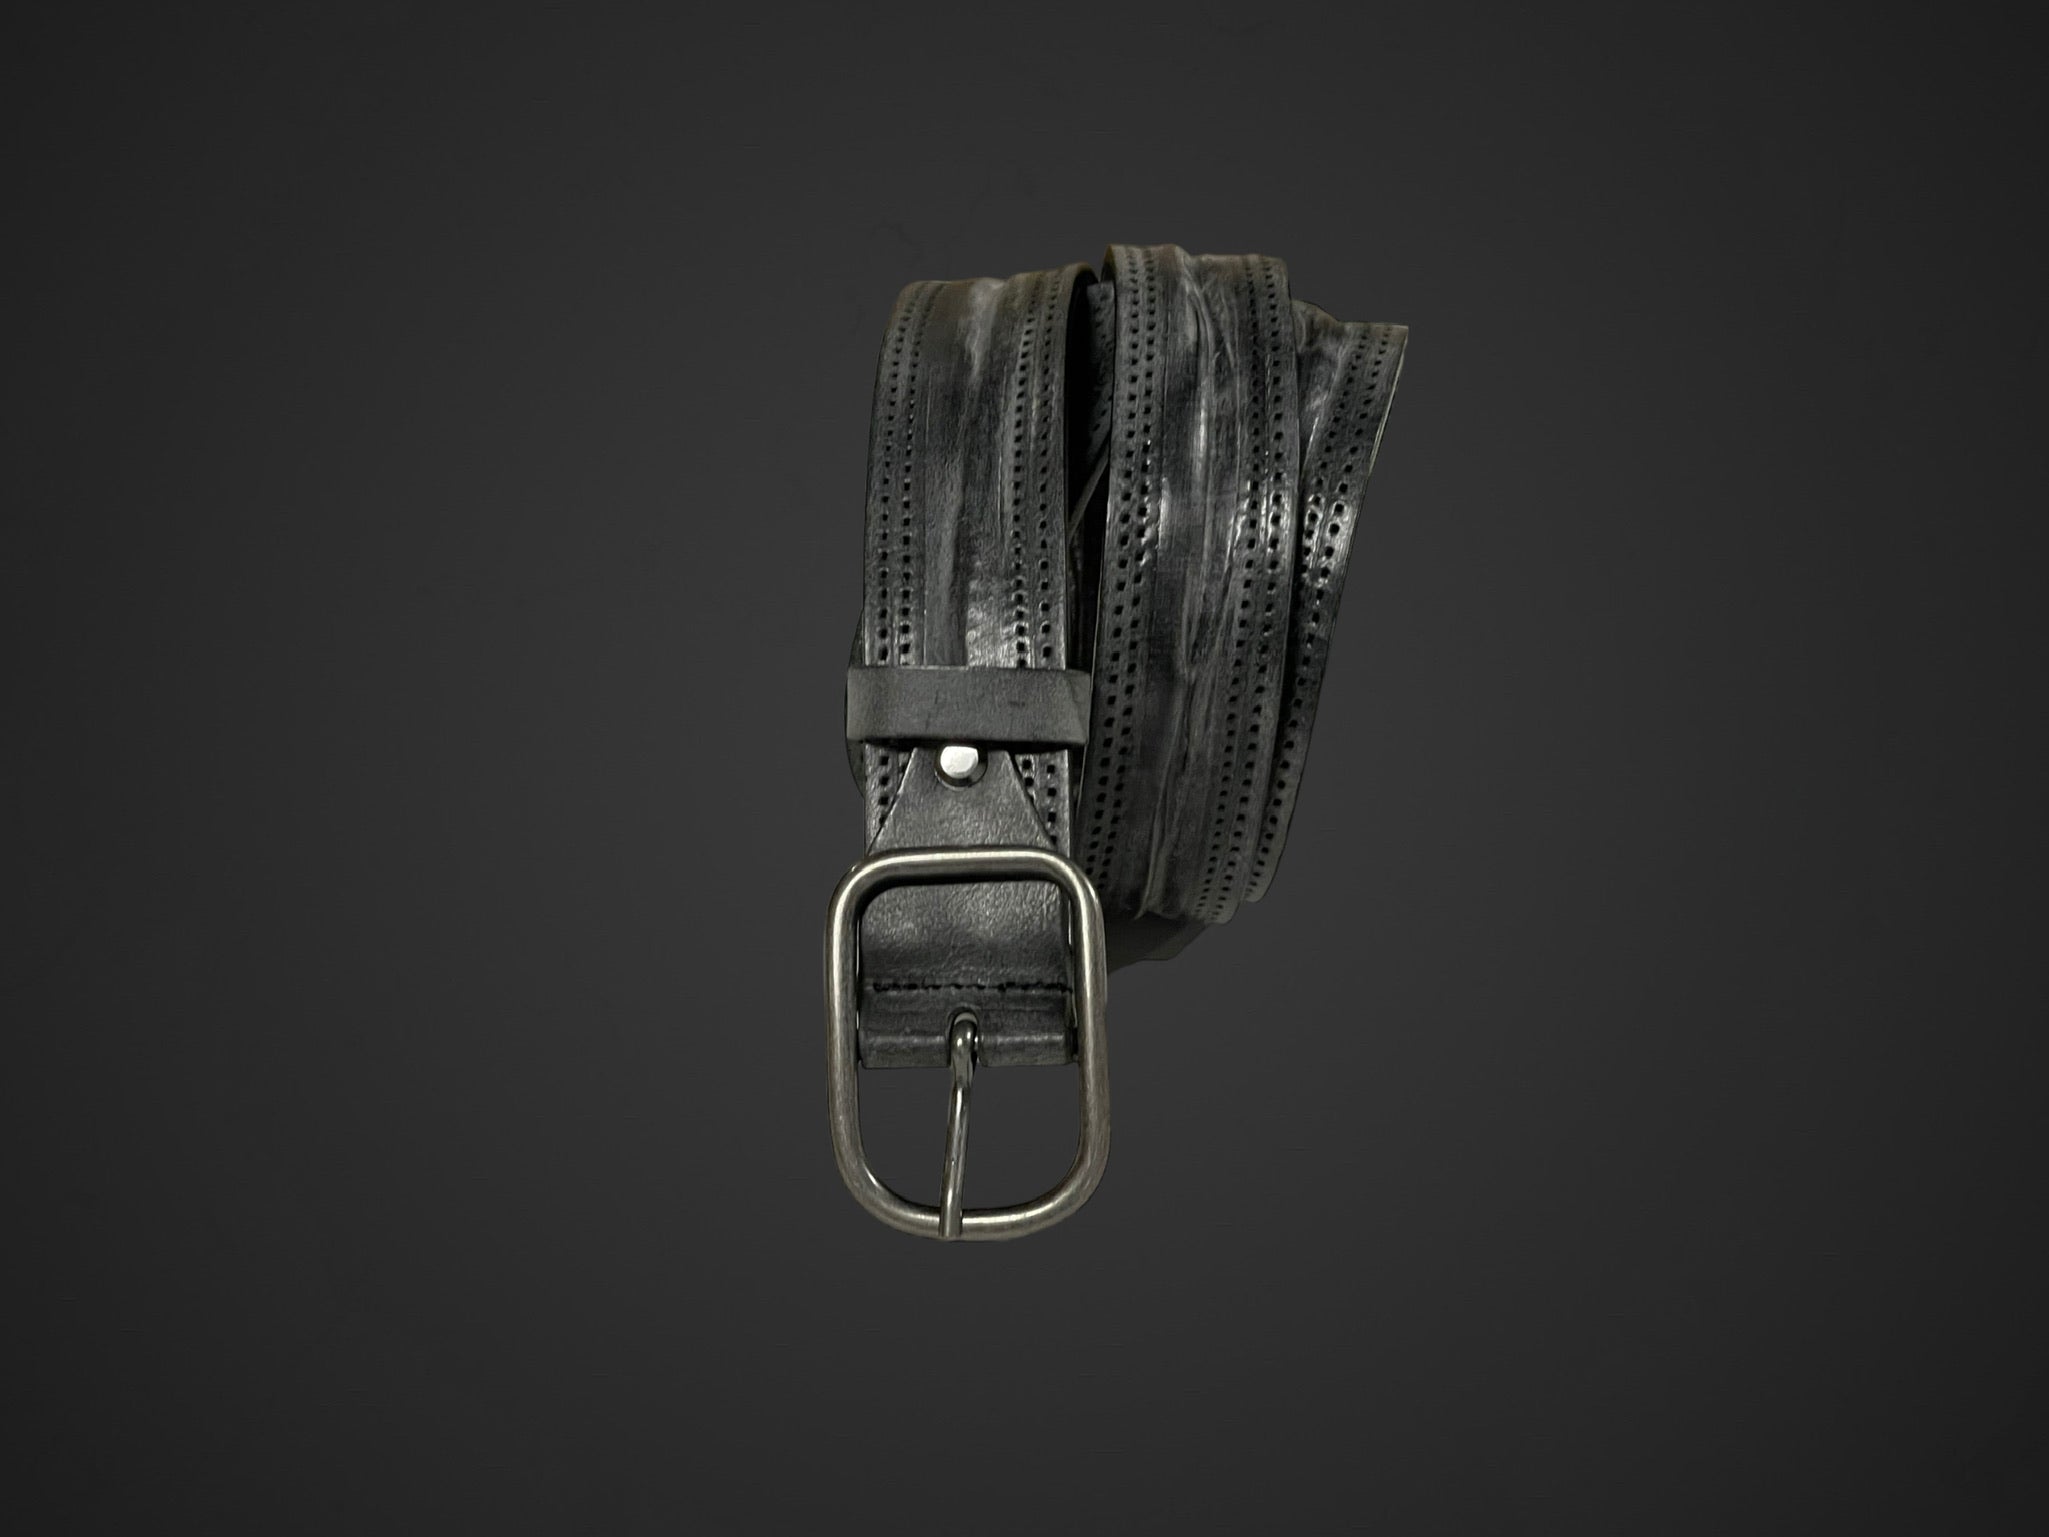 Cintura 035mm lavata e stropicciata con procedimento di ceratura e impuntura senza filo